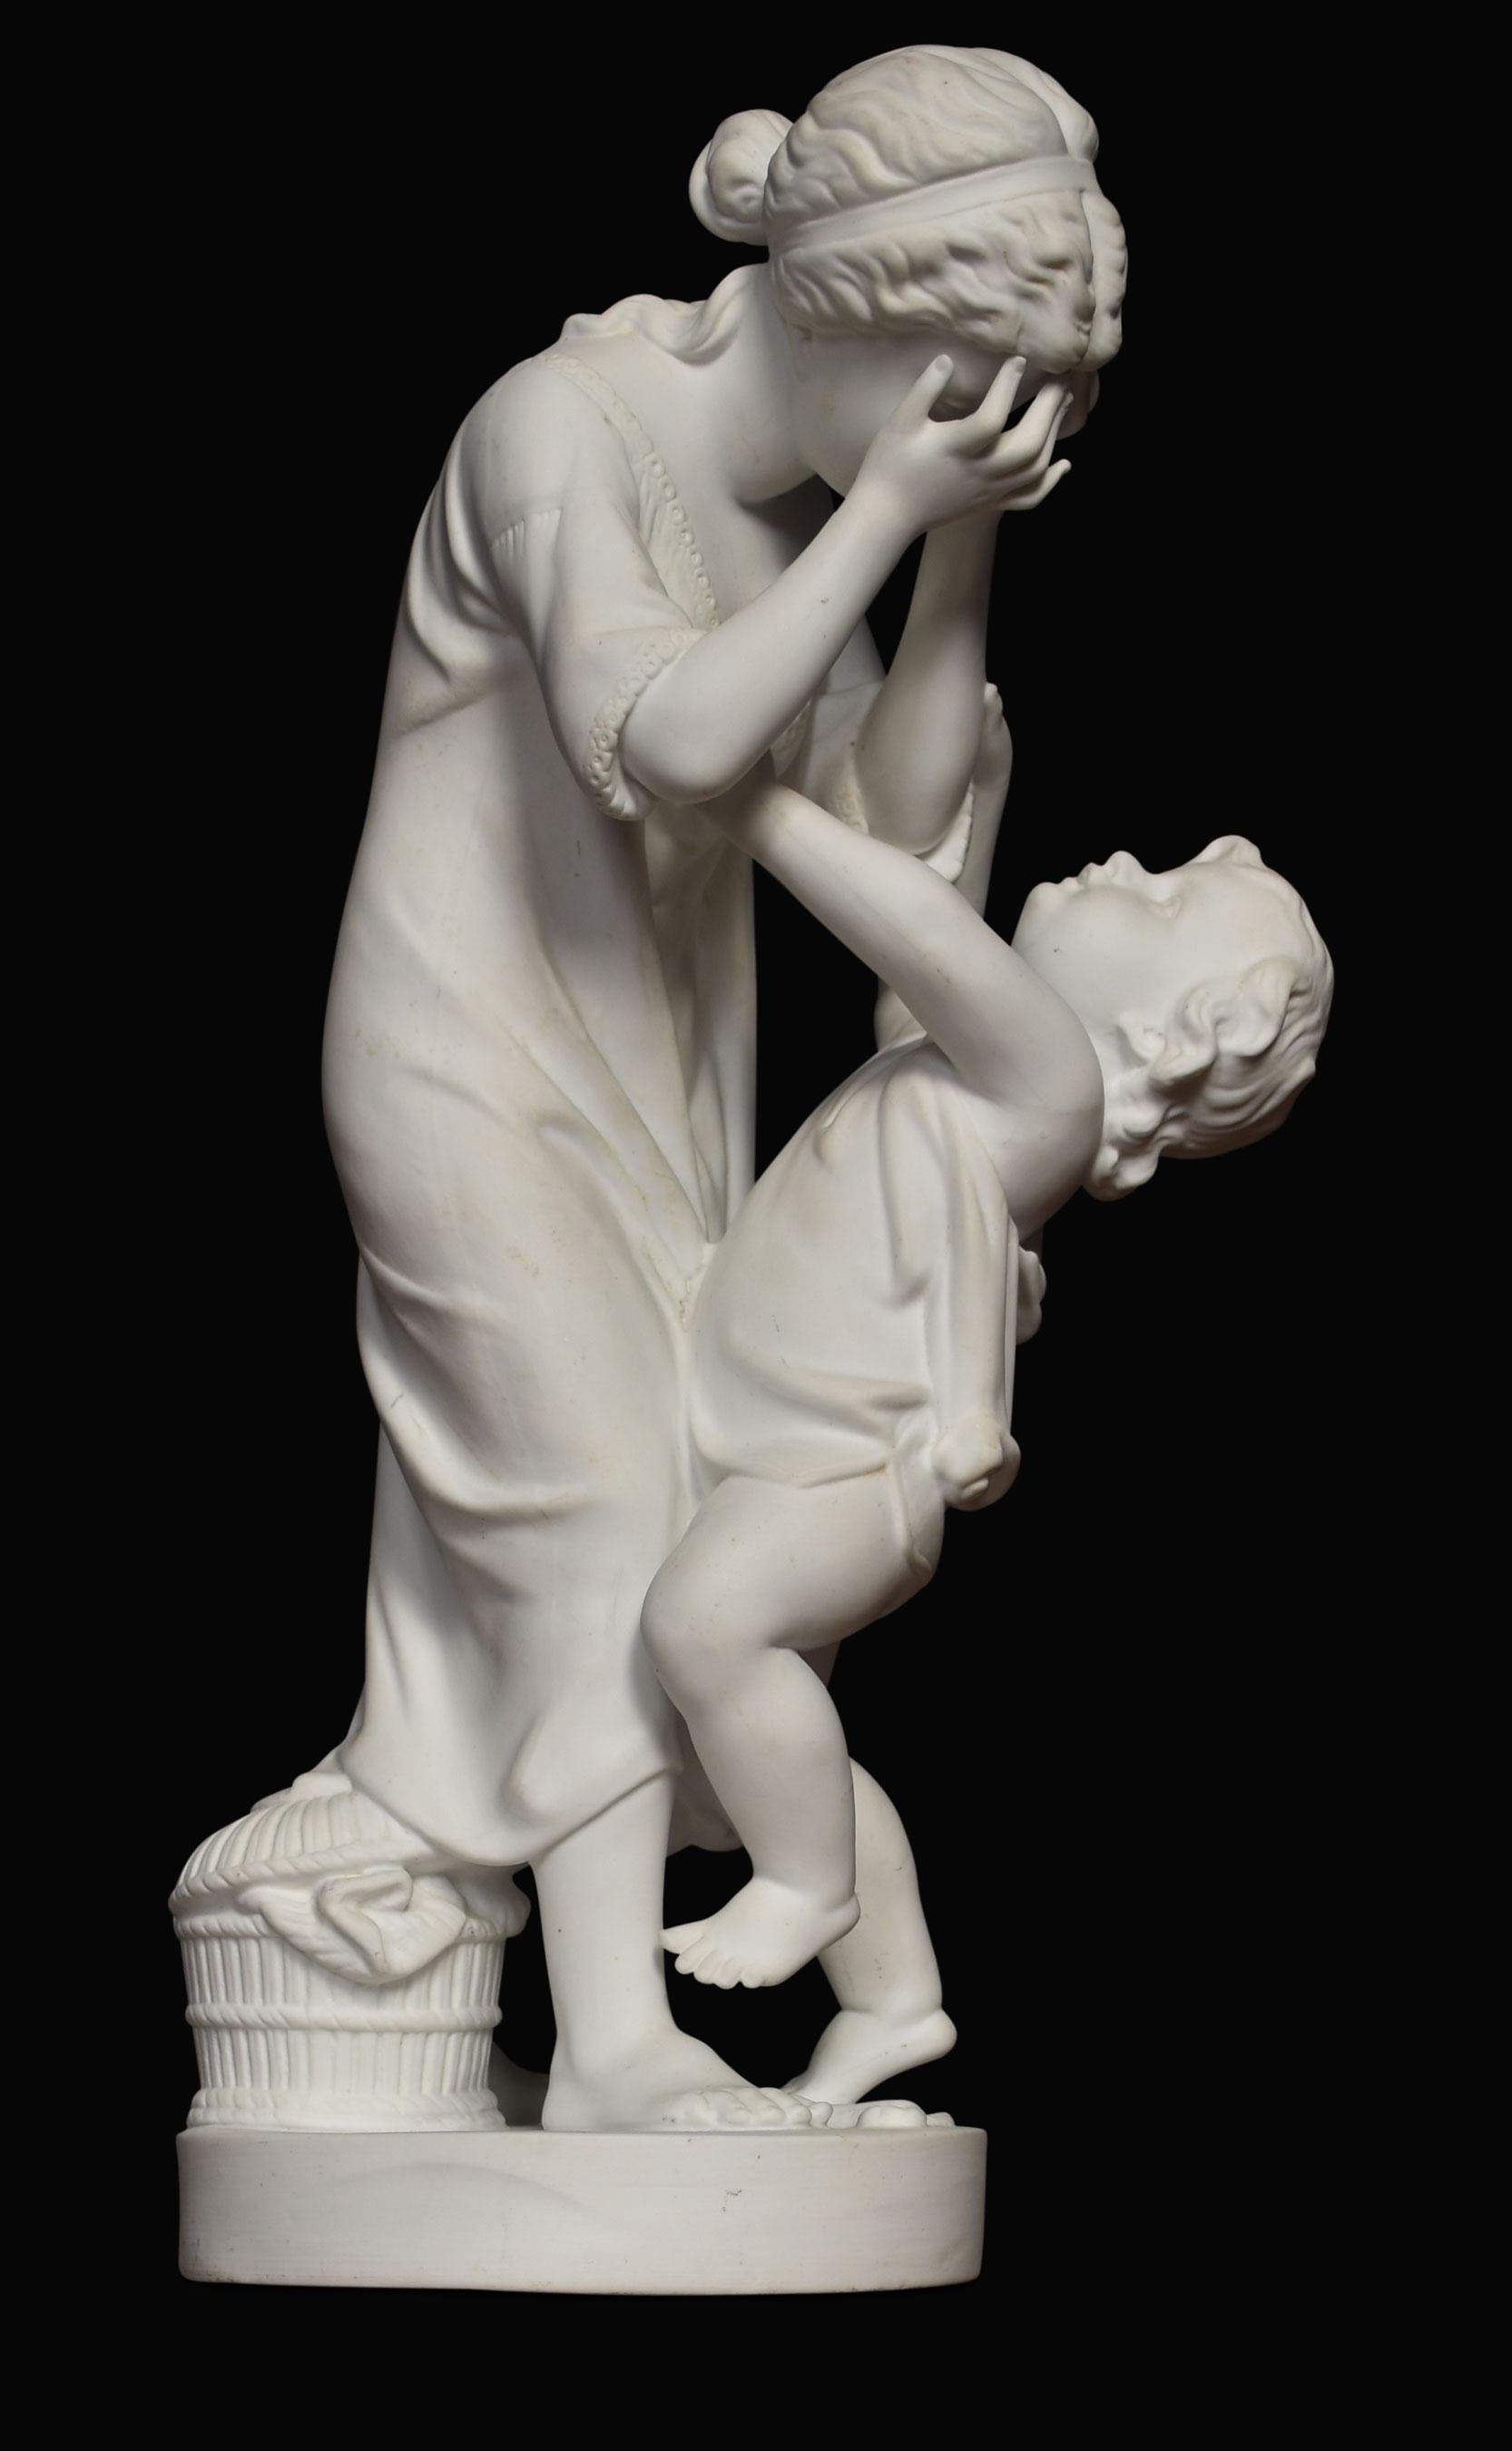 parianware-Figur aus dem 19. Jahrhundert, die Mutter und Kind auf einem runden Sockel darstellt.
Abmessungen
Höhe 15 Zoll
Breite 6 Zoll
Tiefe 6 Zoll.